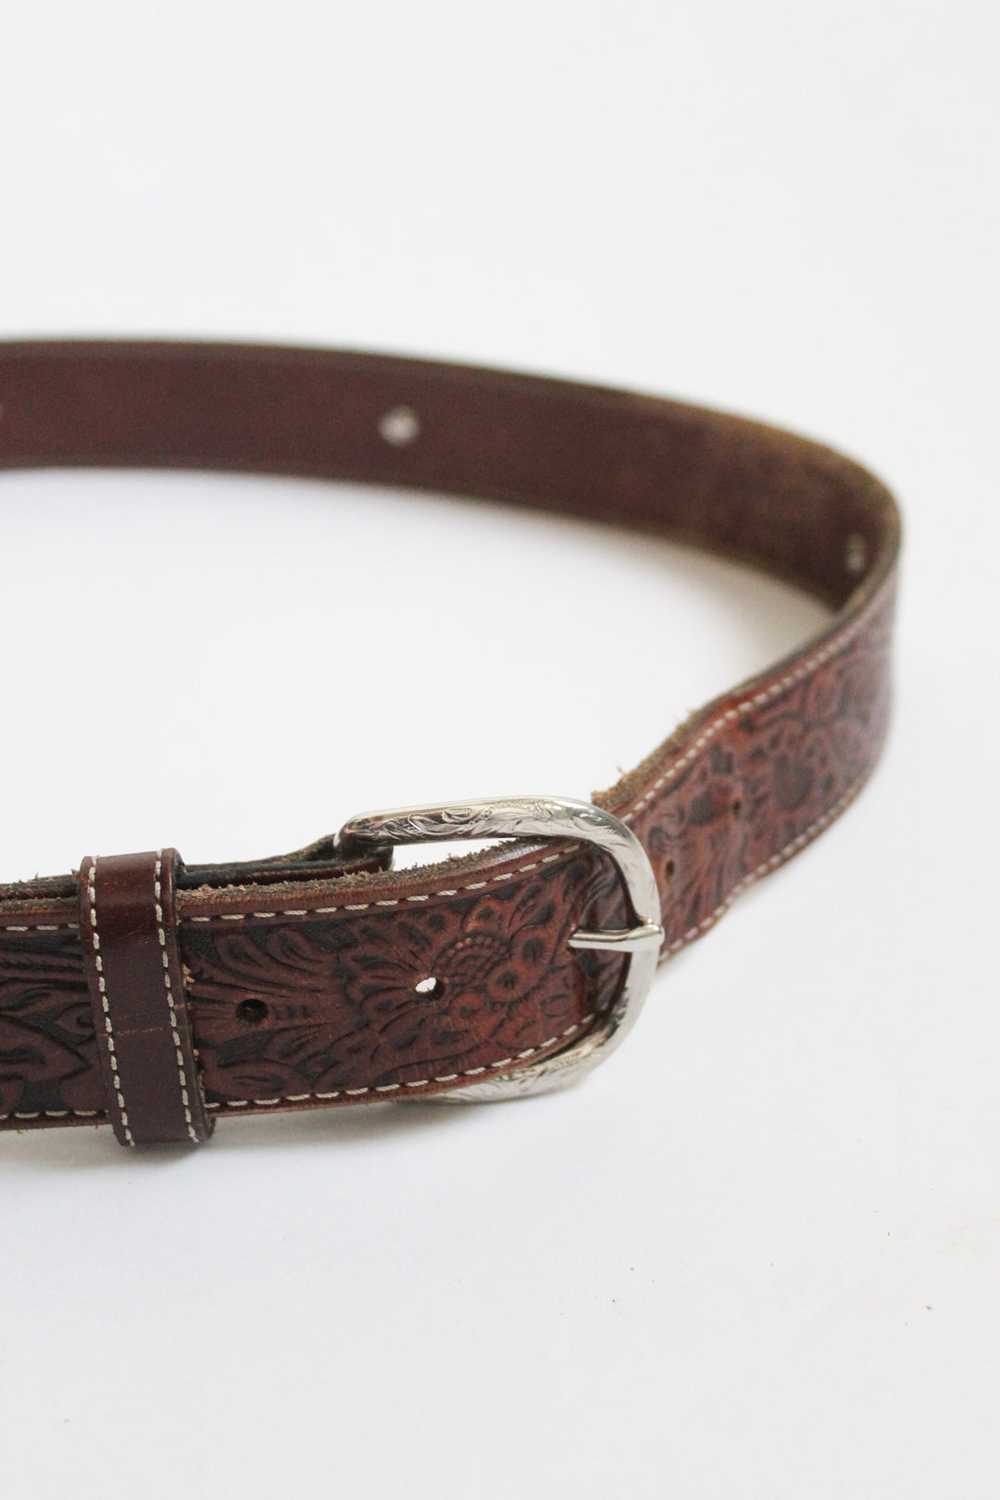 tooled leather belt - image 6